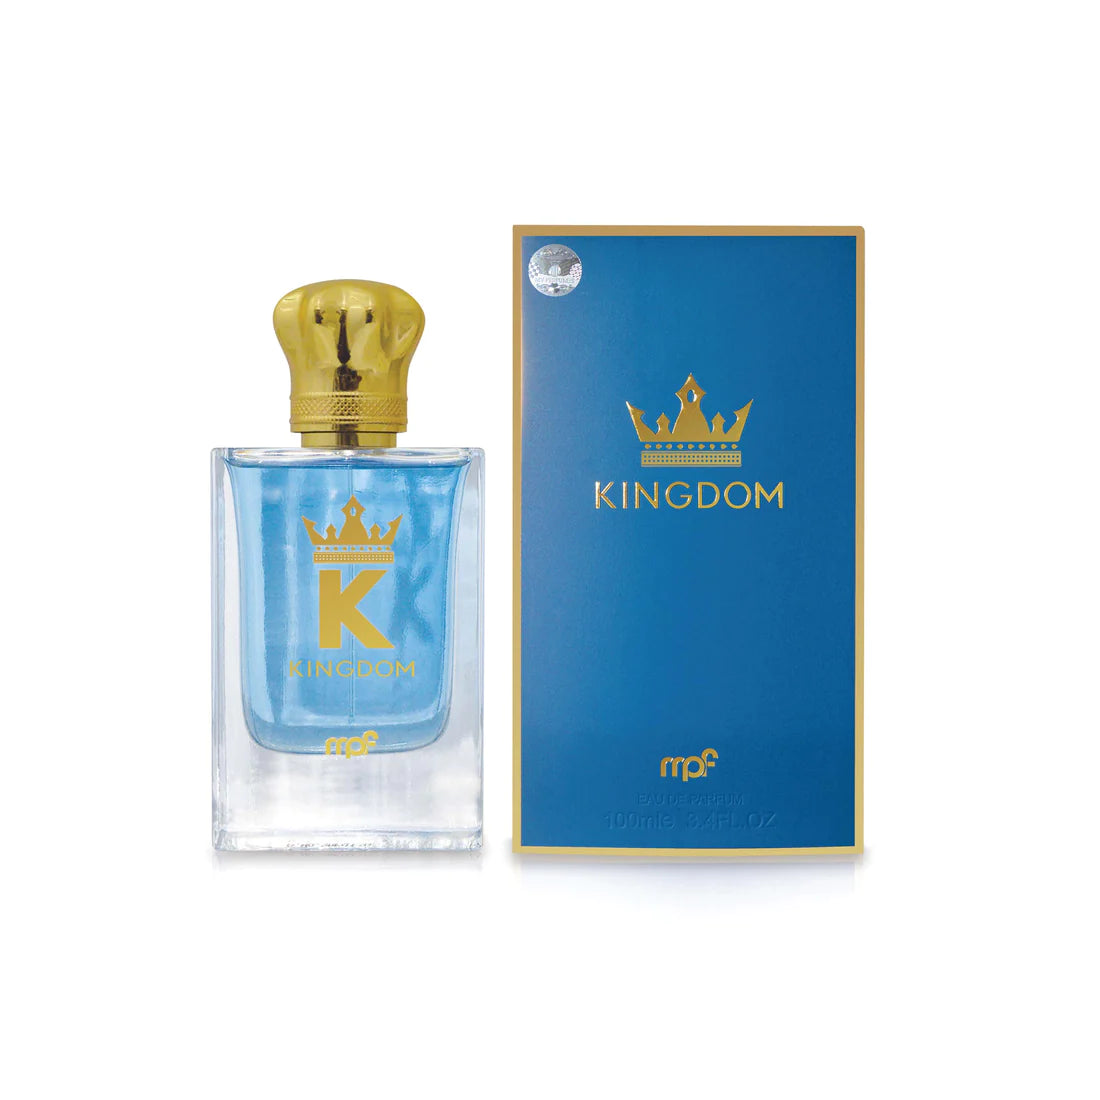 Parfum Kingdom 100ml - My Perfumes